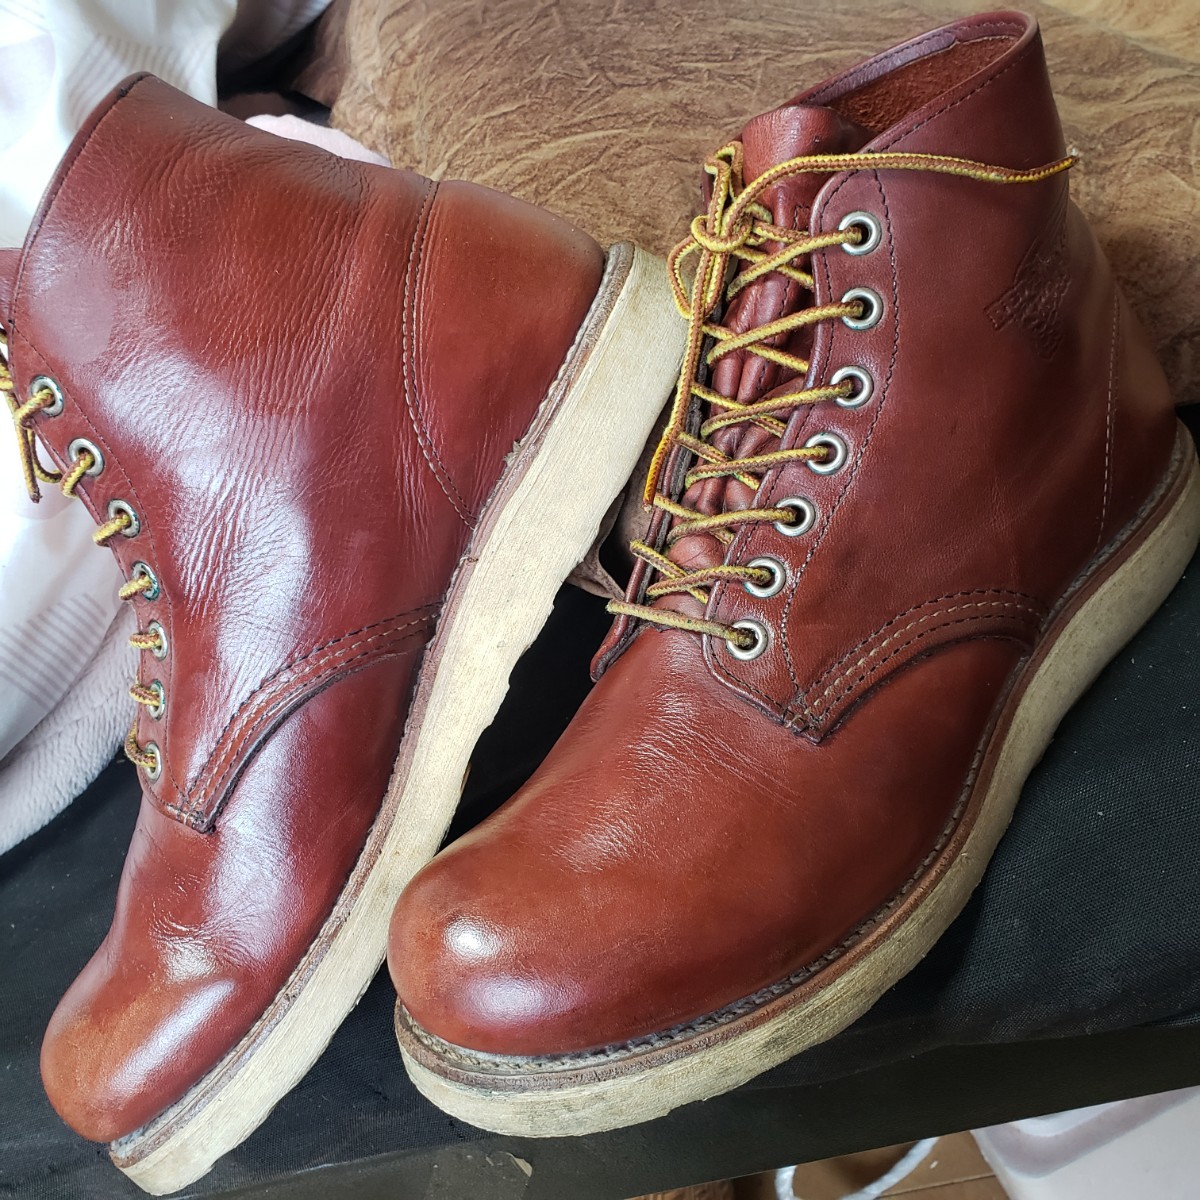 REDWING レッドウィング 9105 アイリッシュセッター IRISHSETTER 米国製 leather レザー BOOTS ブーツ 8.5D シューズ shoes 皮革 26.5㎝ 靴